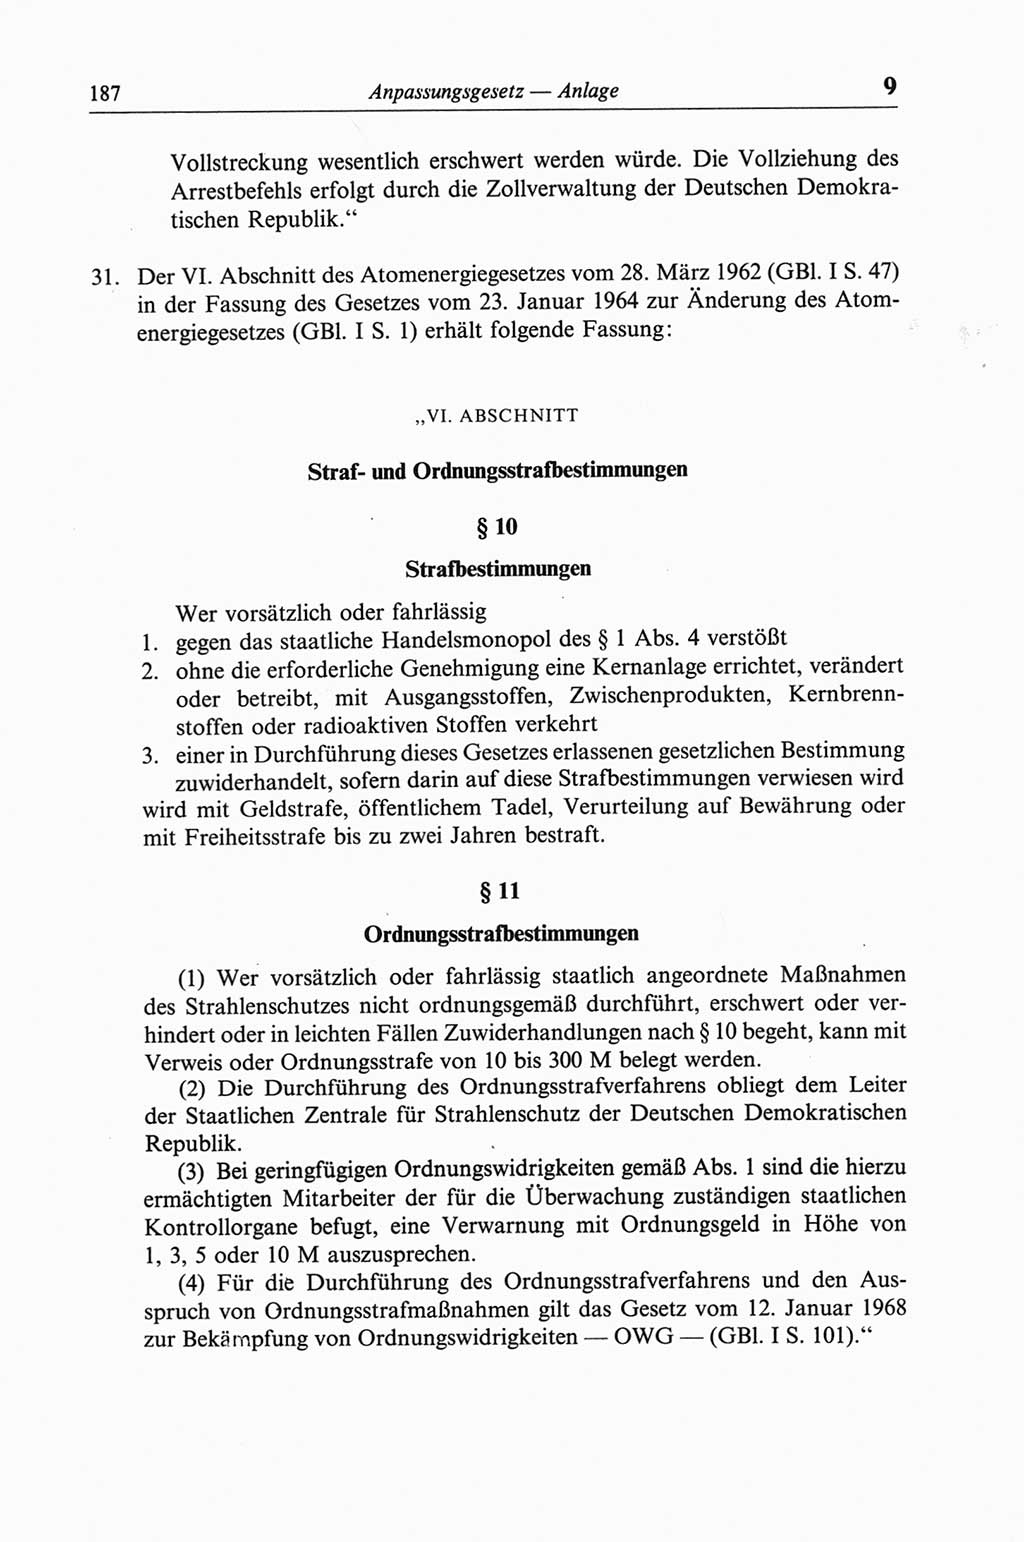 Strafgesetzbuch (StGB) der Deutschen Demokratischen Republik (DDR) und angrenzende Gesetze und Bestimmungen 1968, Seite 187 (StGB Ges. Best. DDR 1968, S. 187)